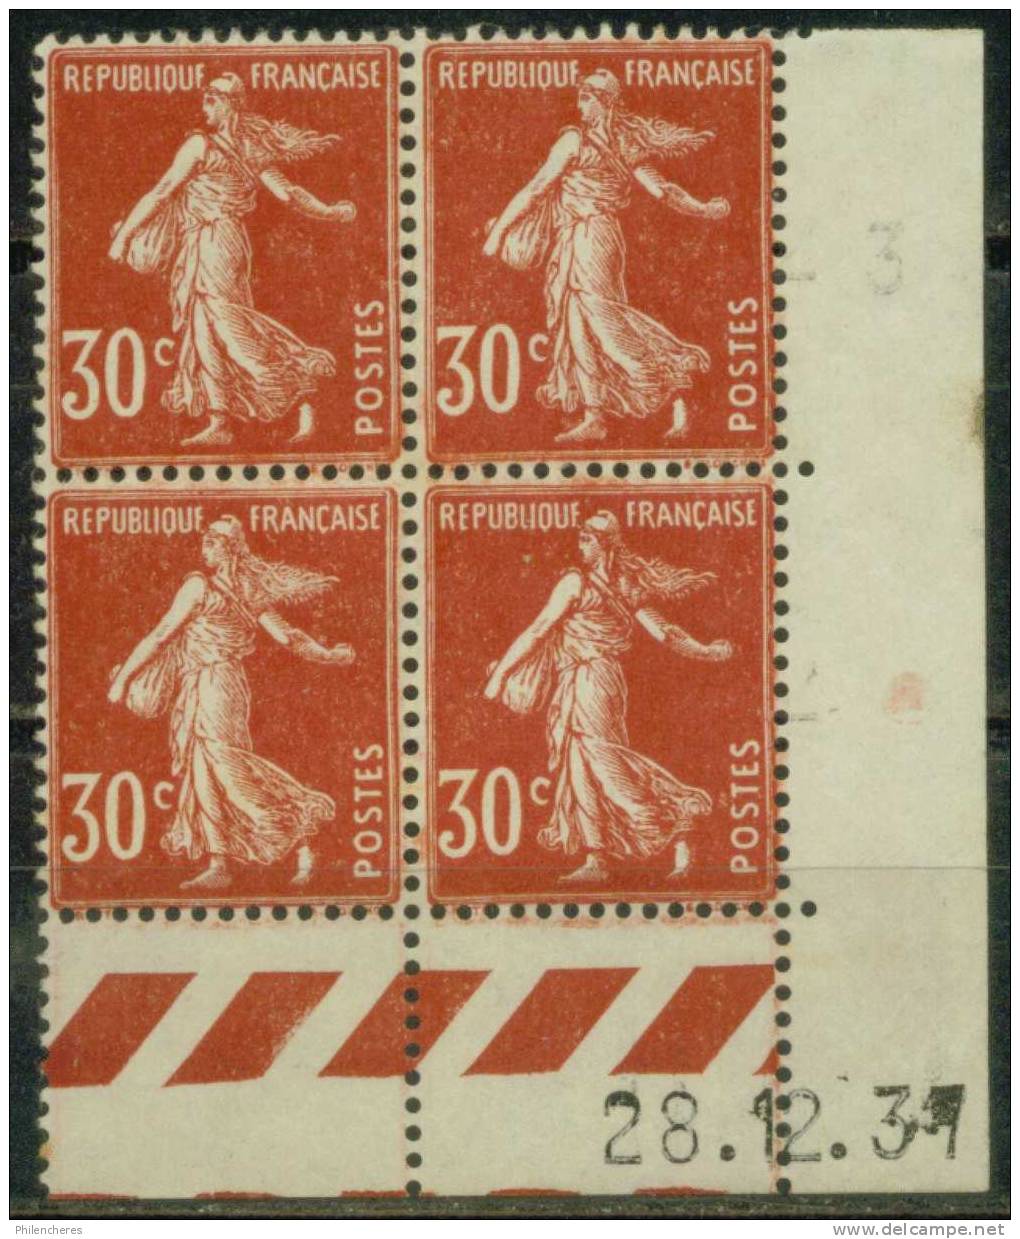 France Bloc De 4 - Coin Daté 1937 - Yvert N° 360 X - Cote 5 Euros - Prix De Départ 1,5 Euro - 1930-1939